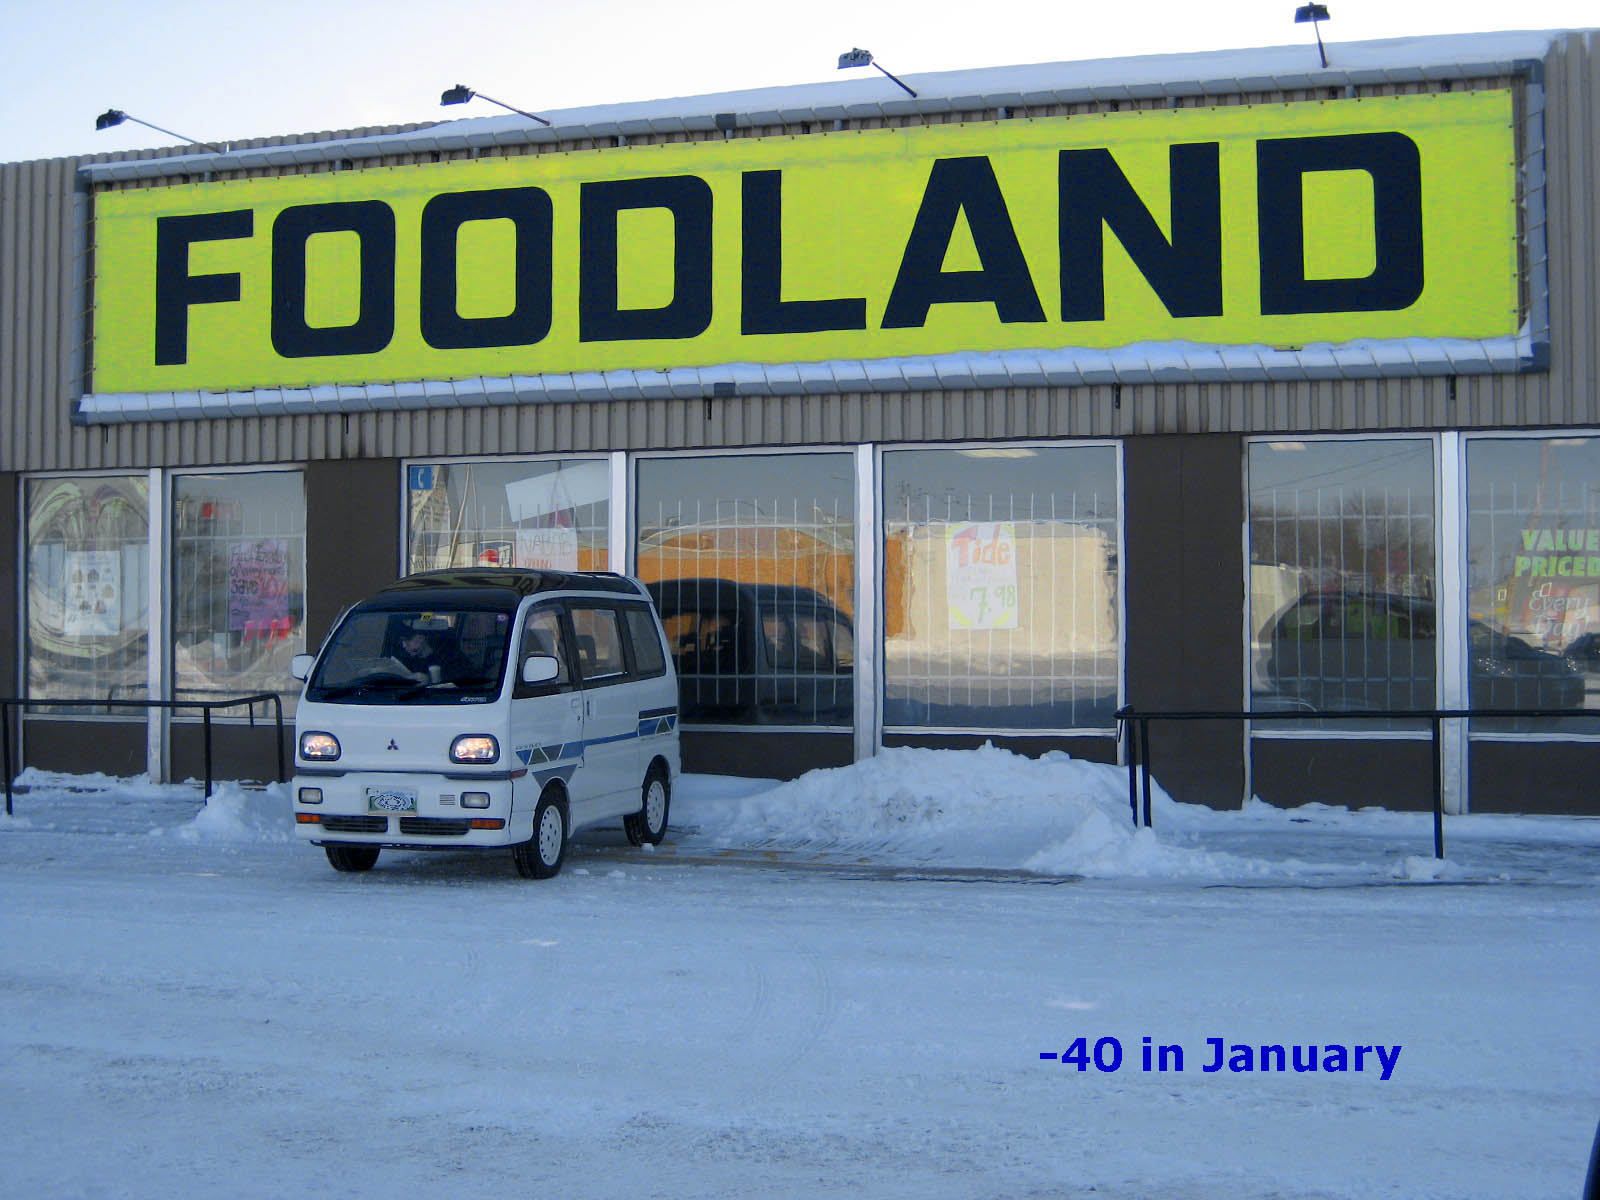 van at foodland1.jpg